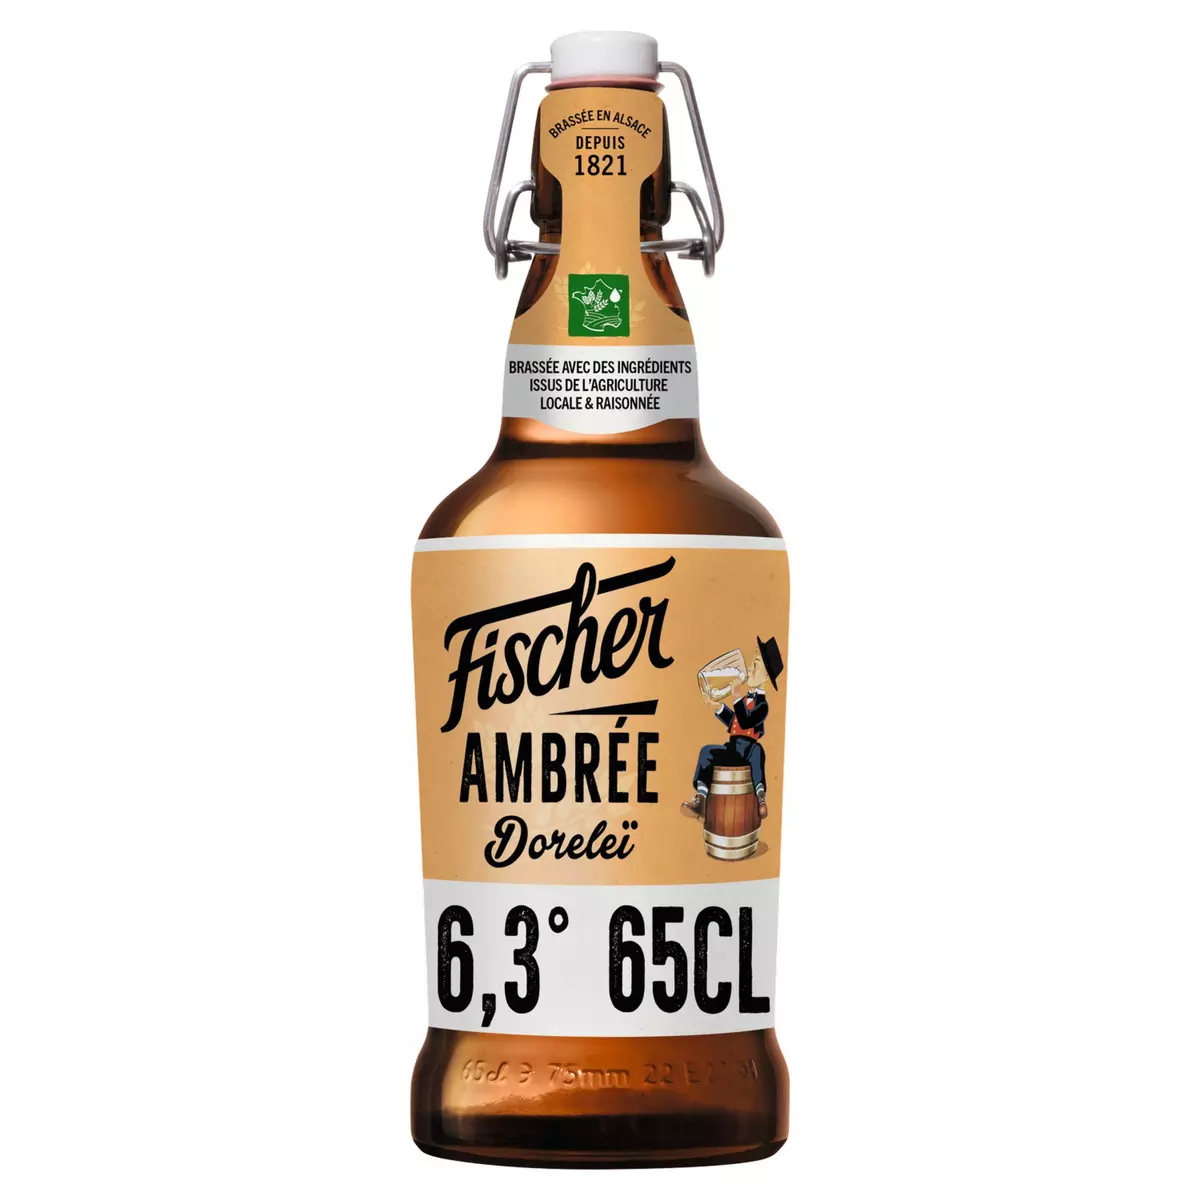 FISCHER Bière réserve ambrée aromatisée épices 6.3% 65cl